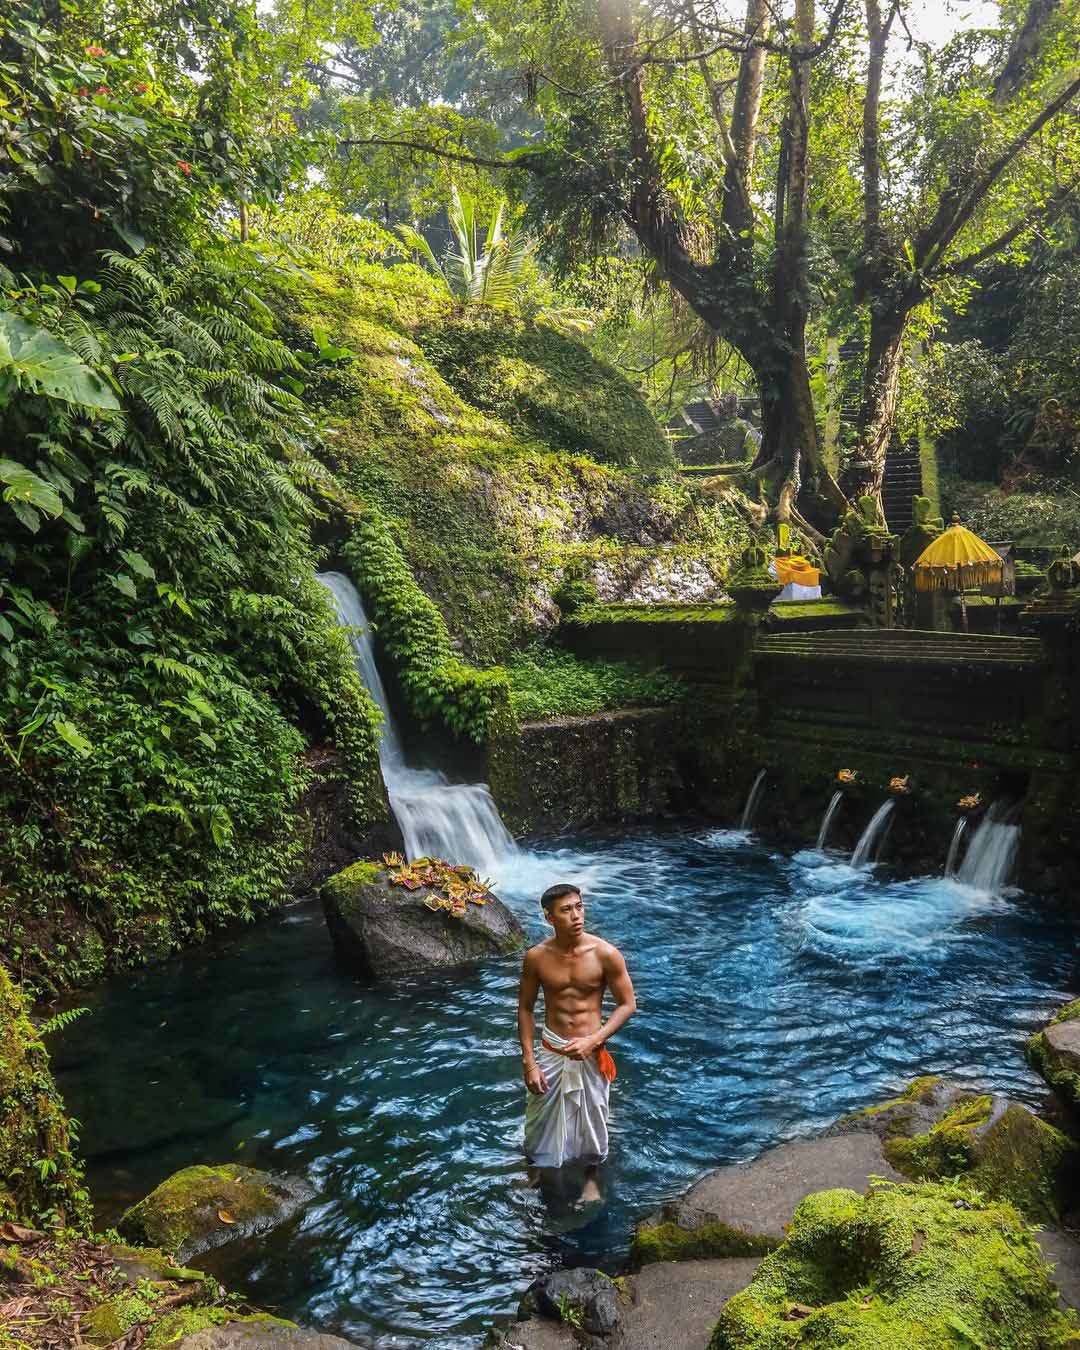 Bali < pran> Один из лучших курортов в Юг о-Восточной Азии, Сен т-Регис Бали, является прекрасным местом, где вы можете утонуть в тропическом зеленых и отправиться на лучший пляж.